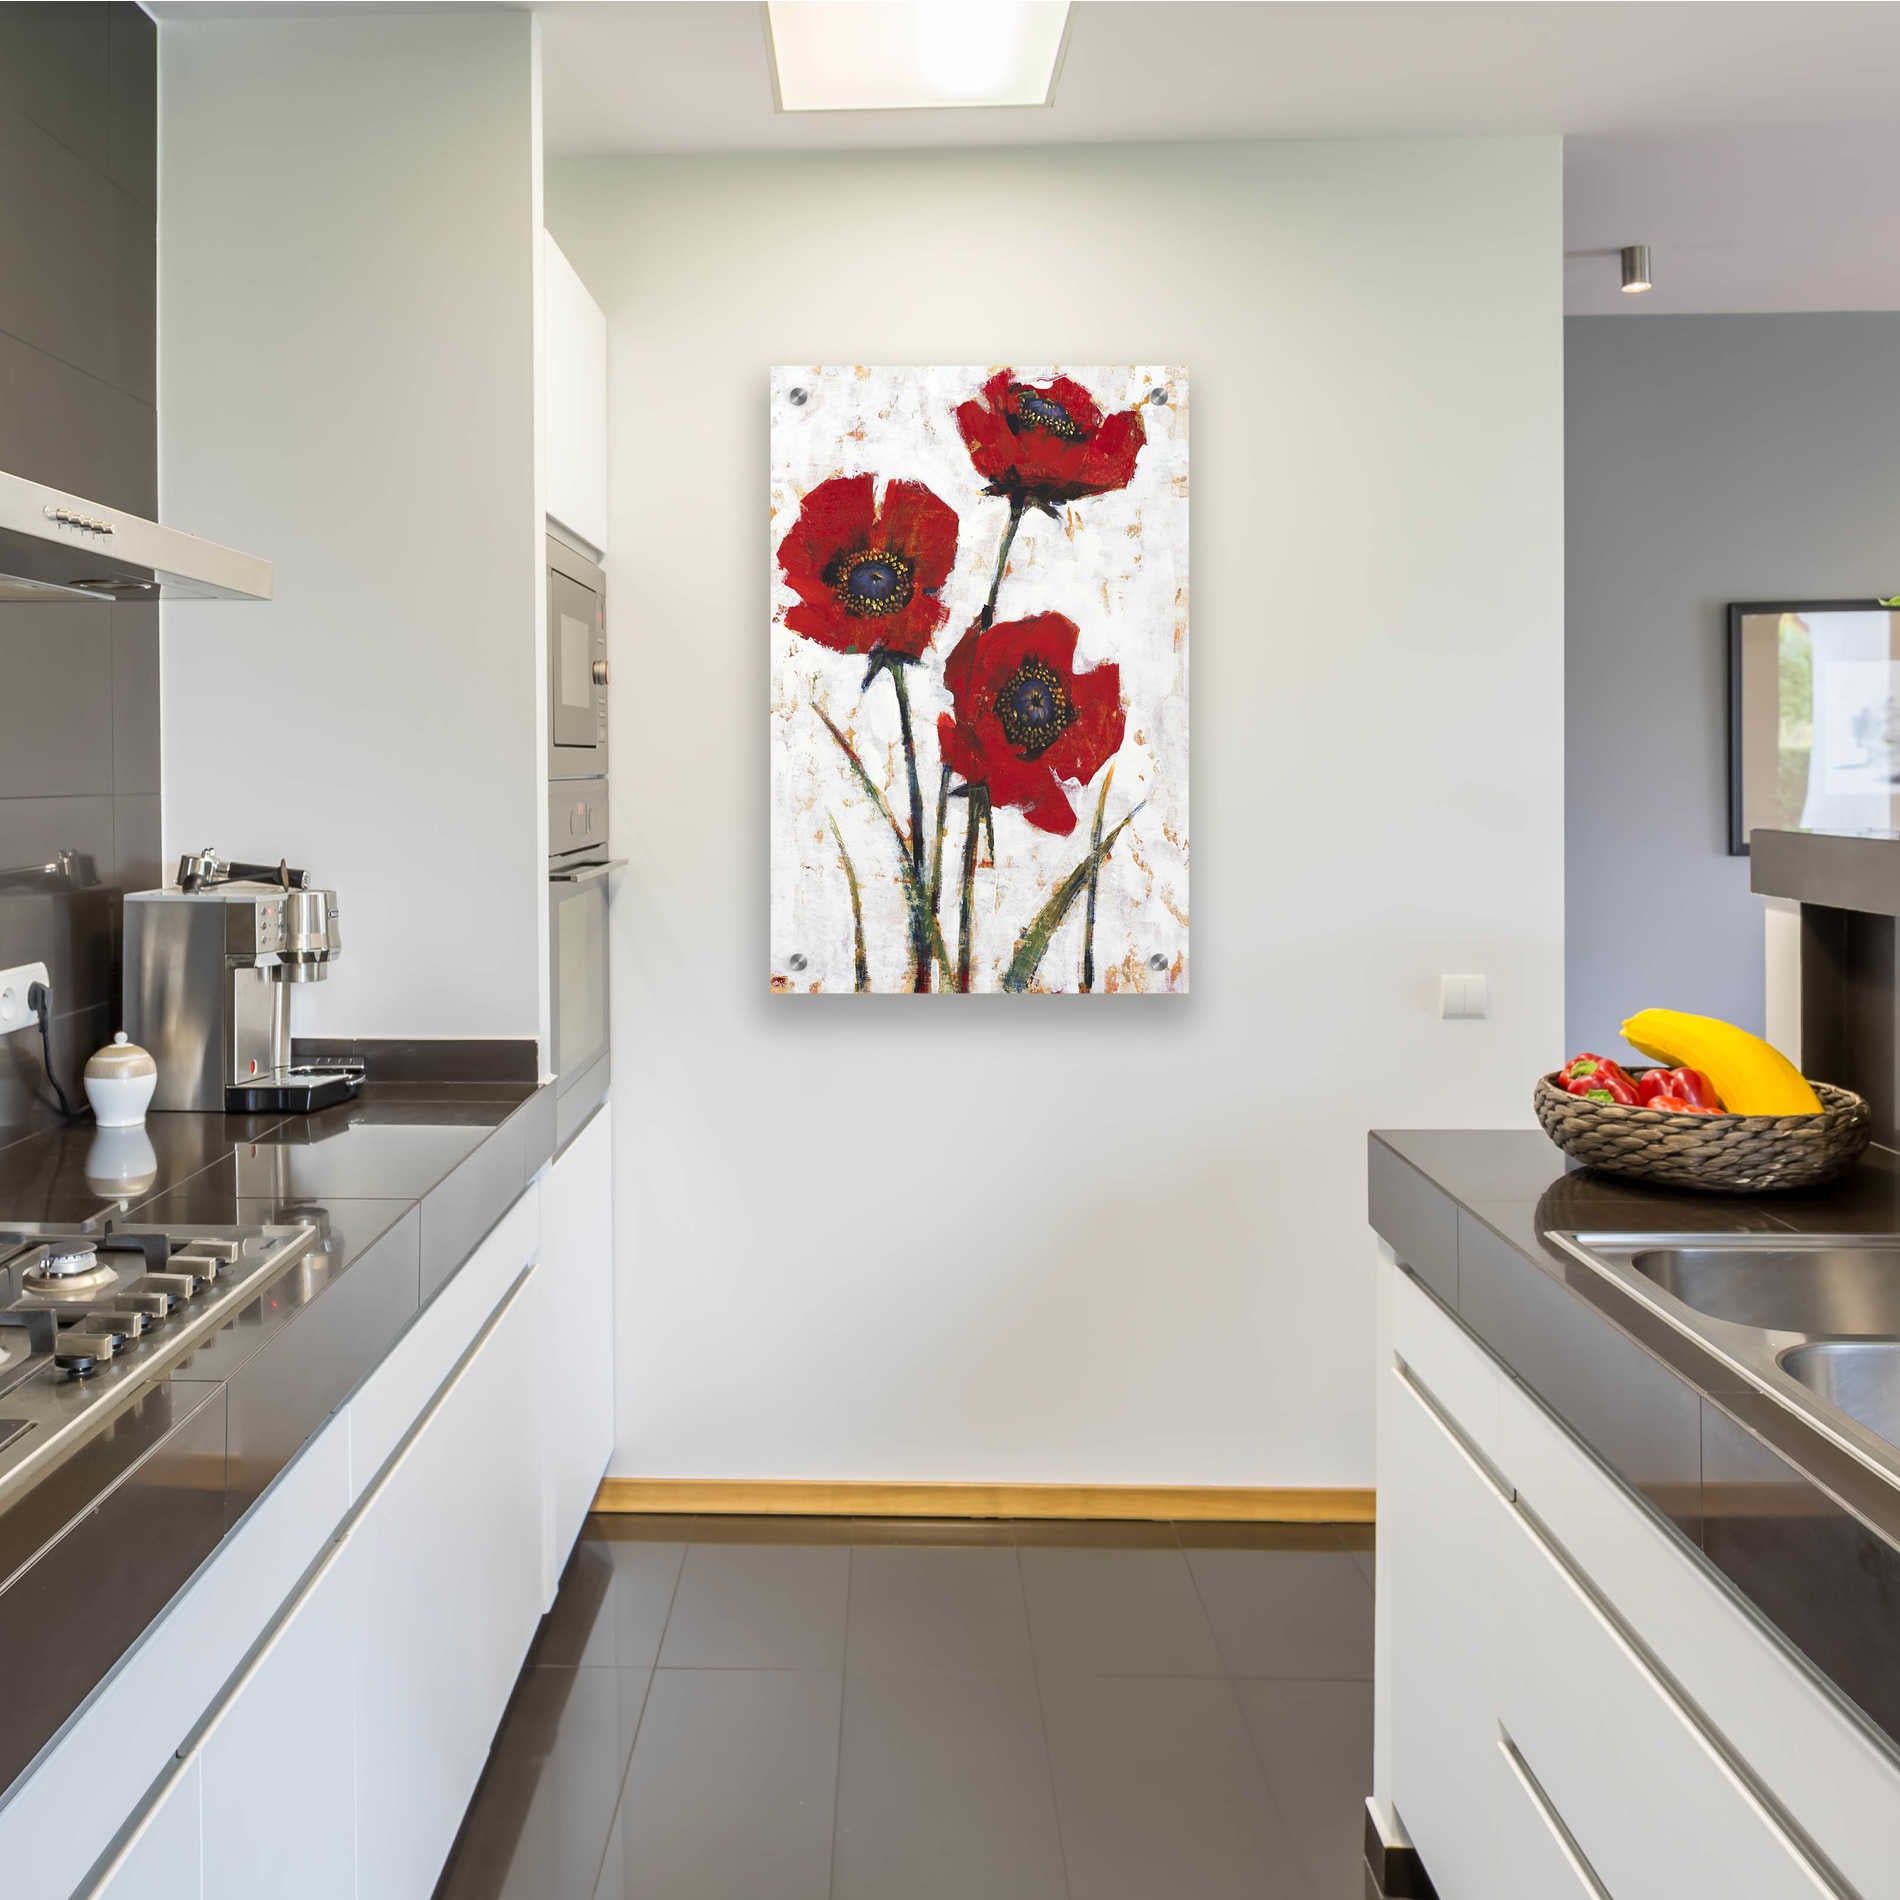 Epic Art 'Red Poppy Fresco II' by Tim O'Toole, Acrylic Glass Wall Art,24x36